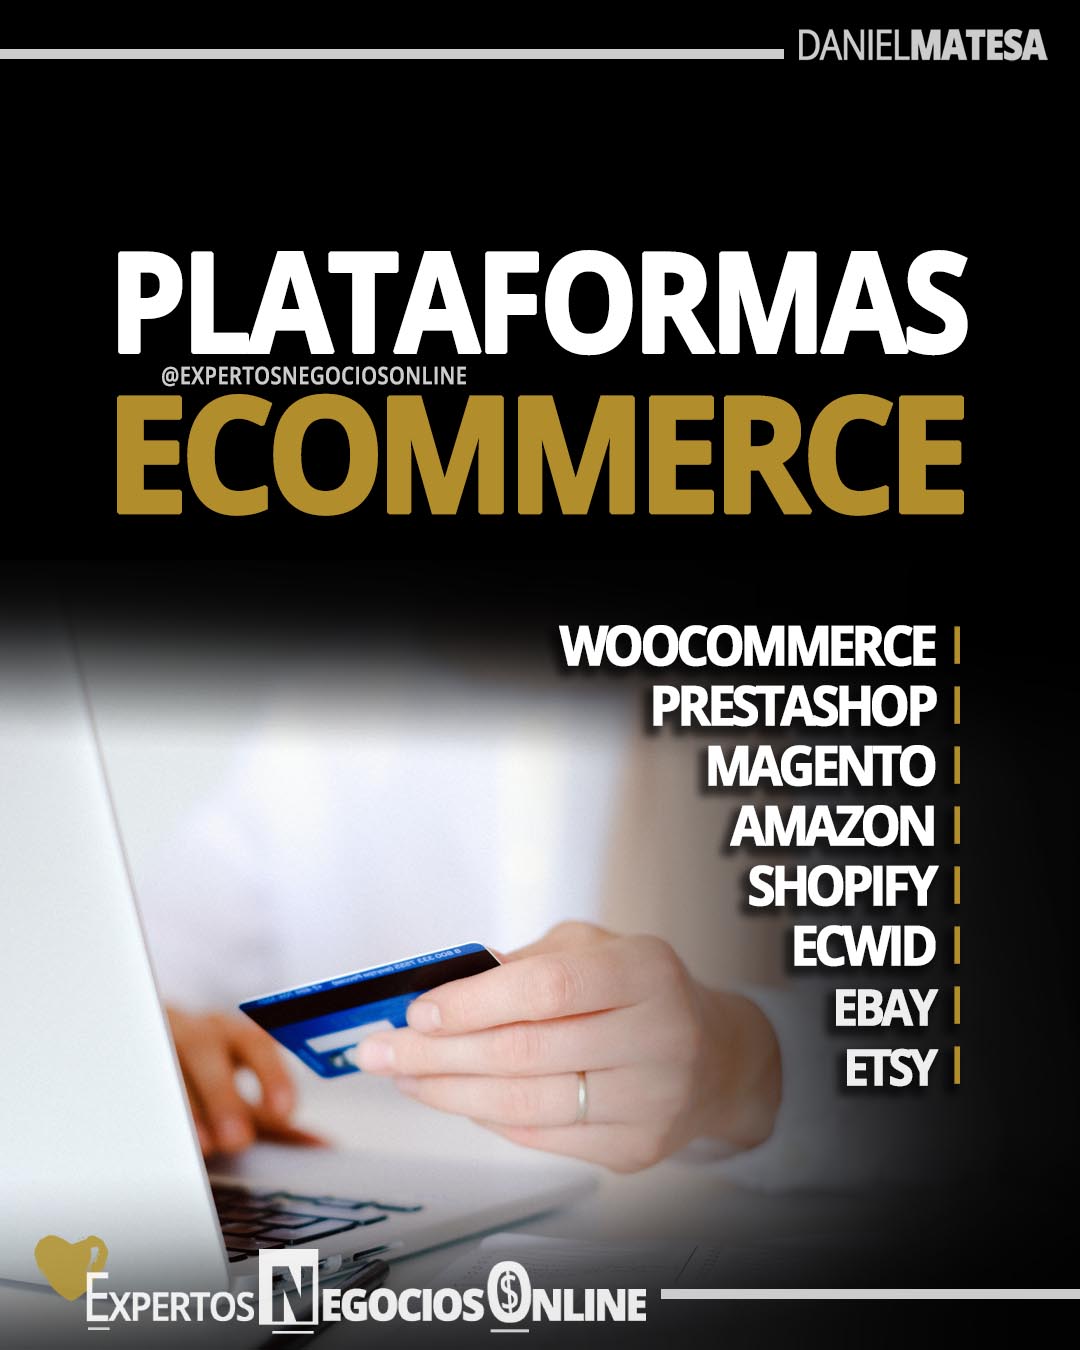 Plataformas eCommerce - para crear tiendas virtuales gratis